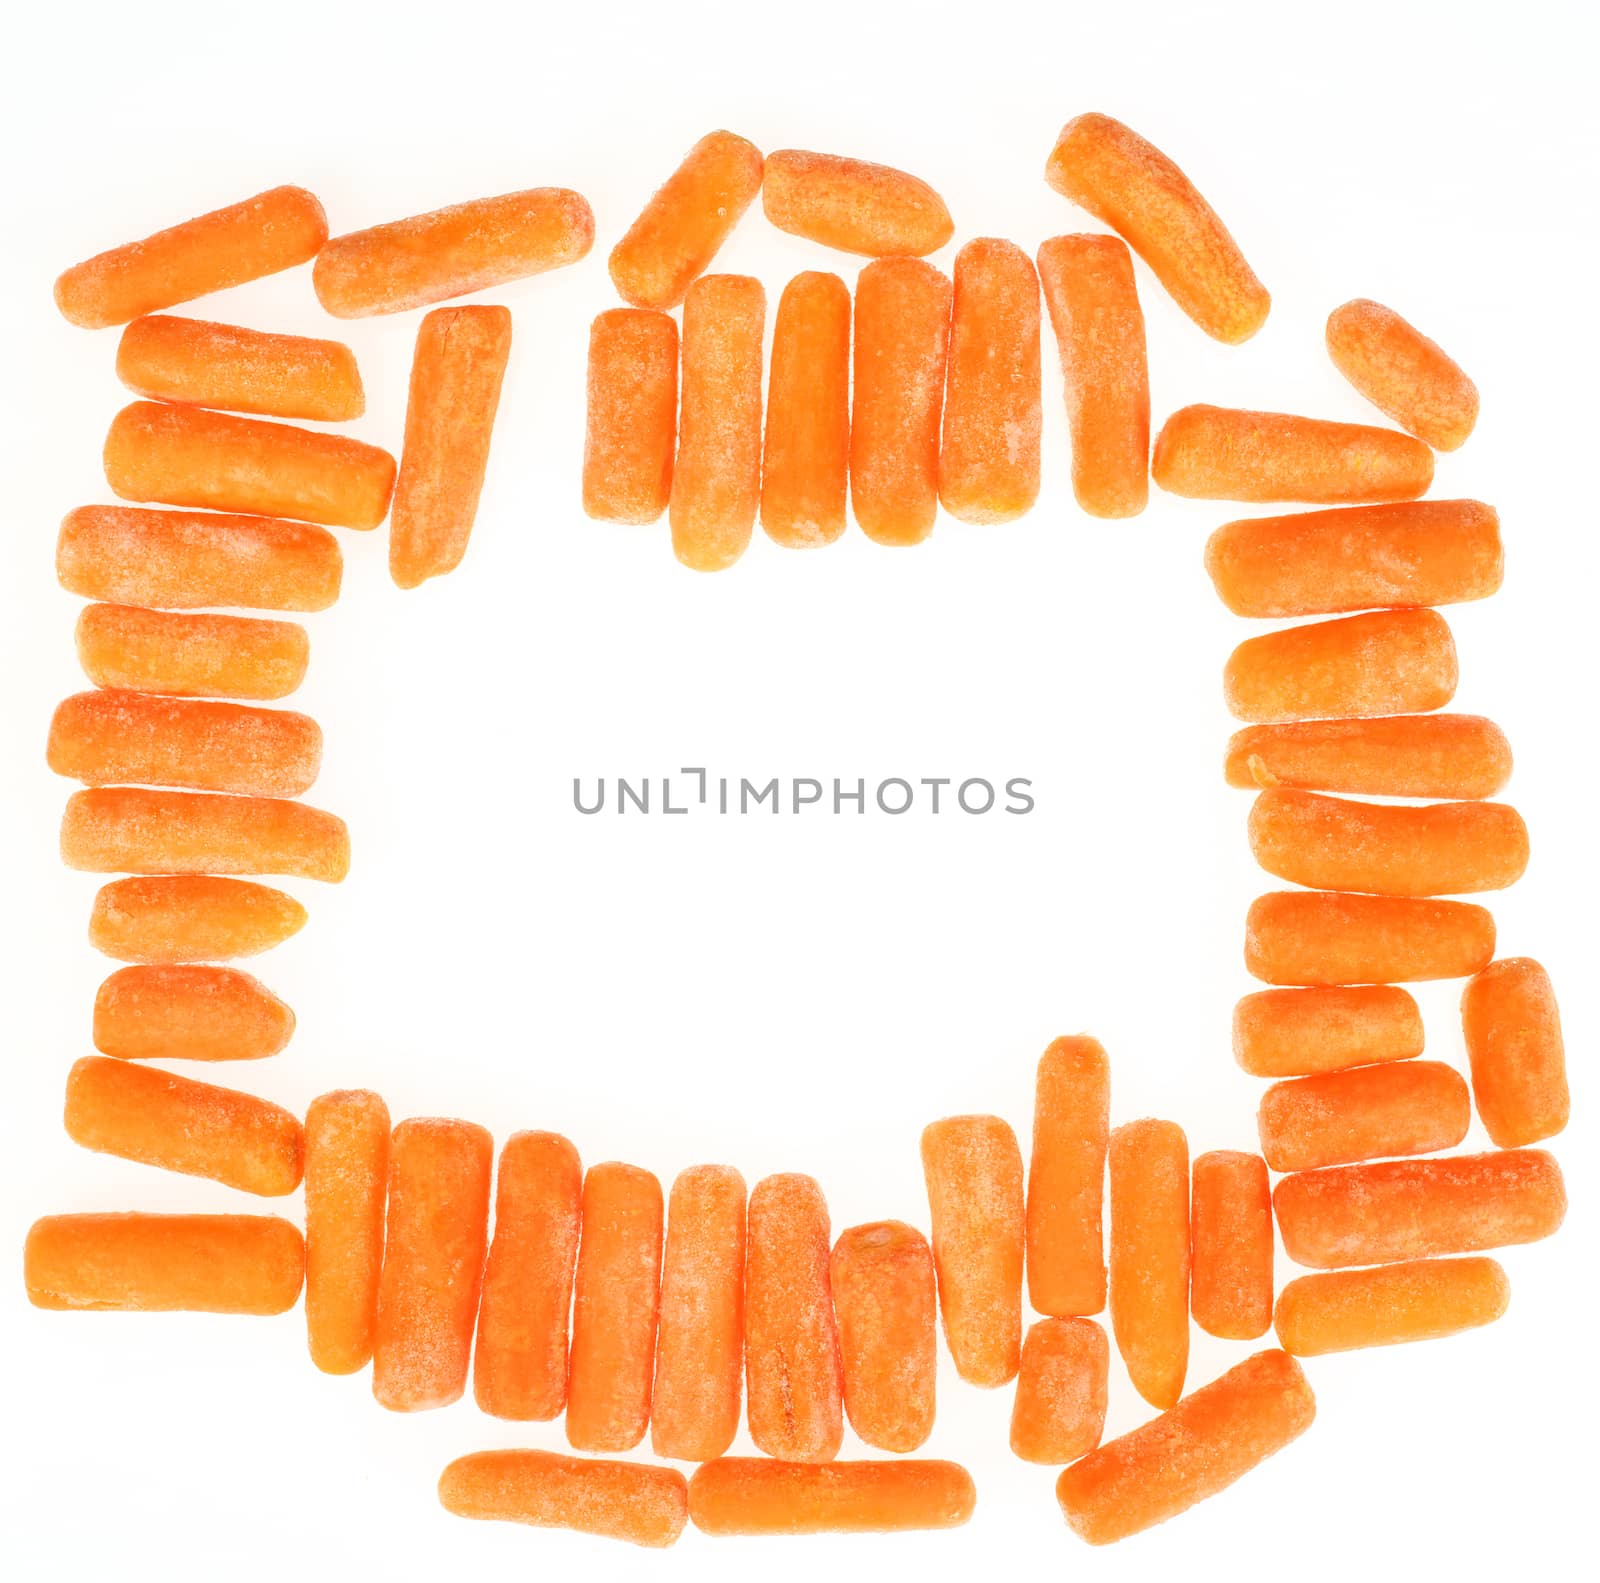  frozen baby carrots by alexkosev